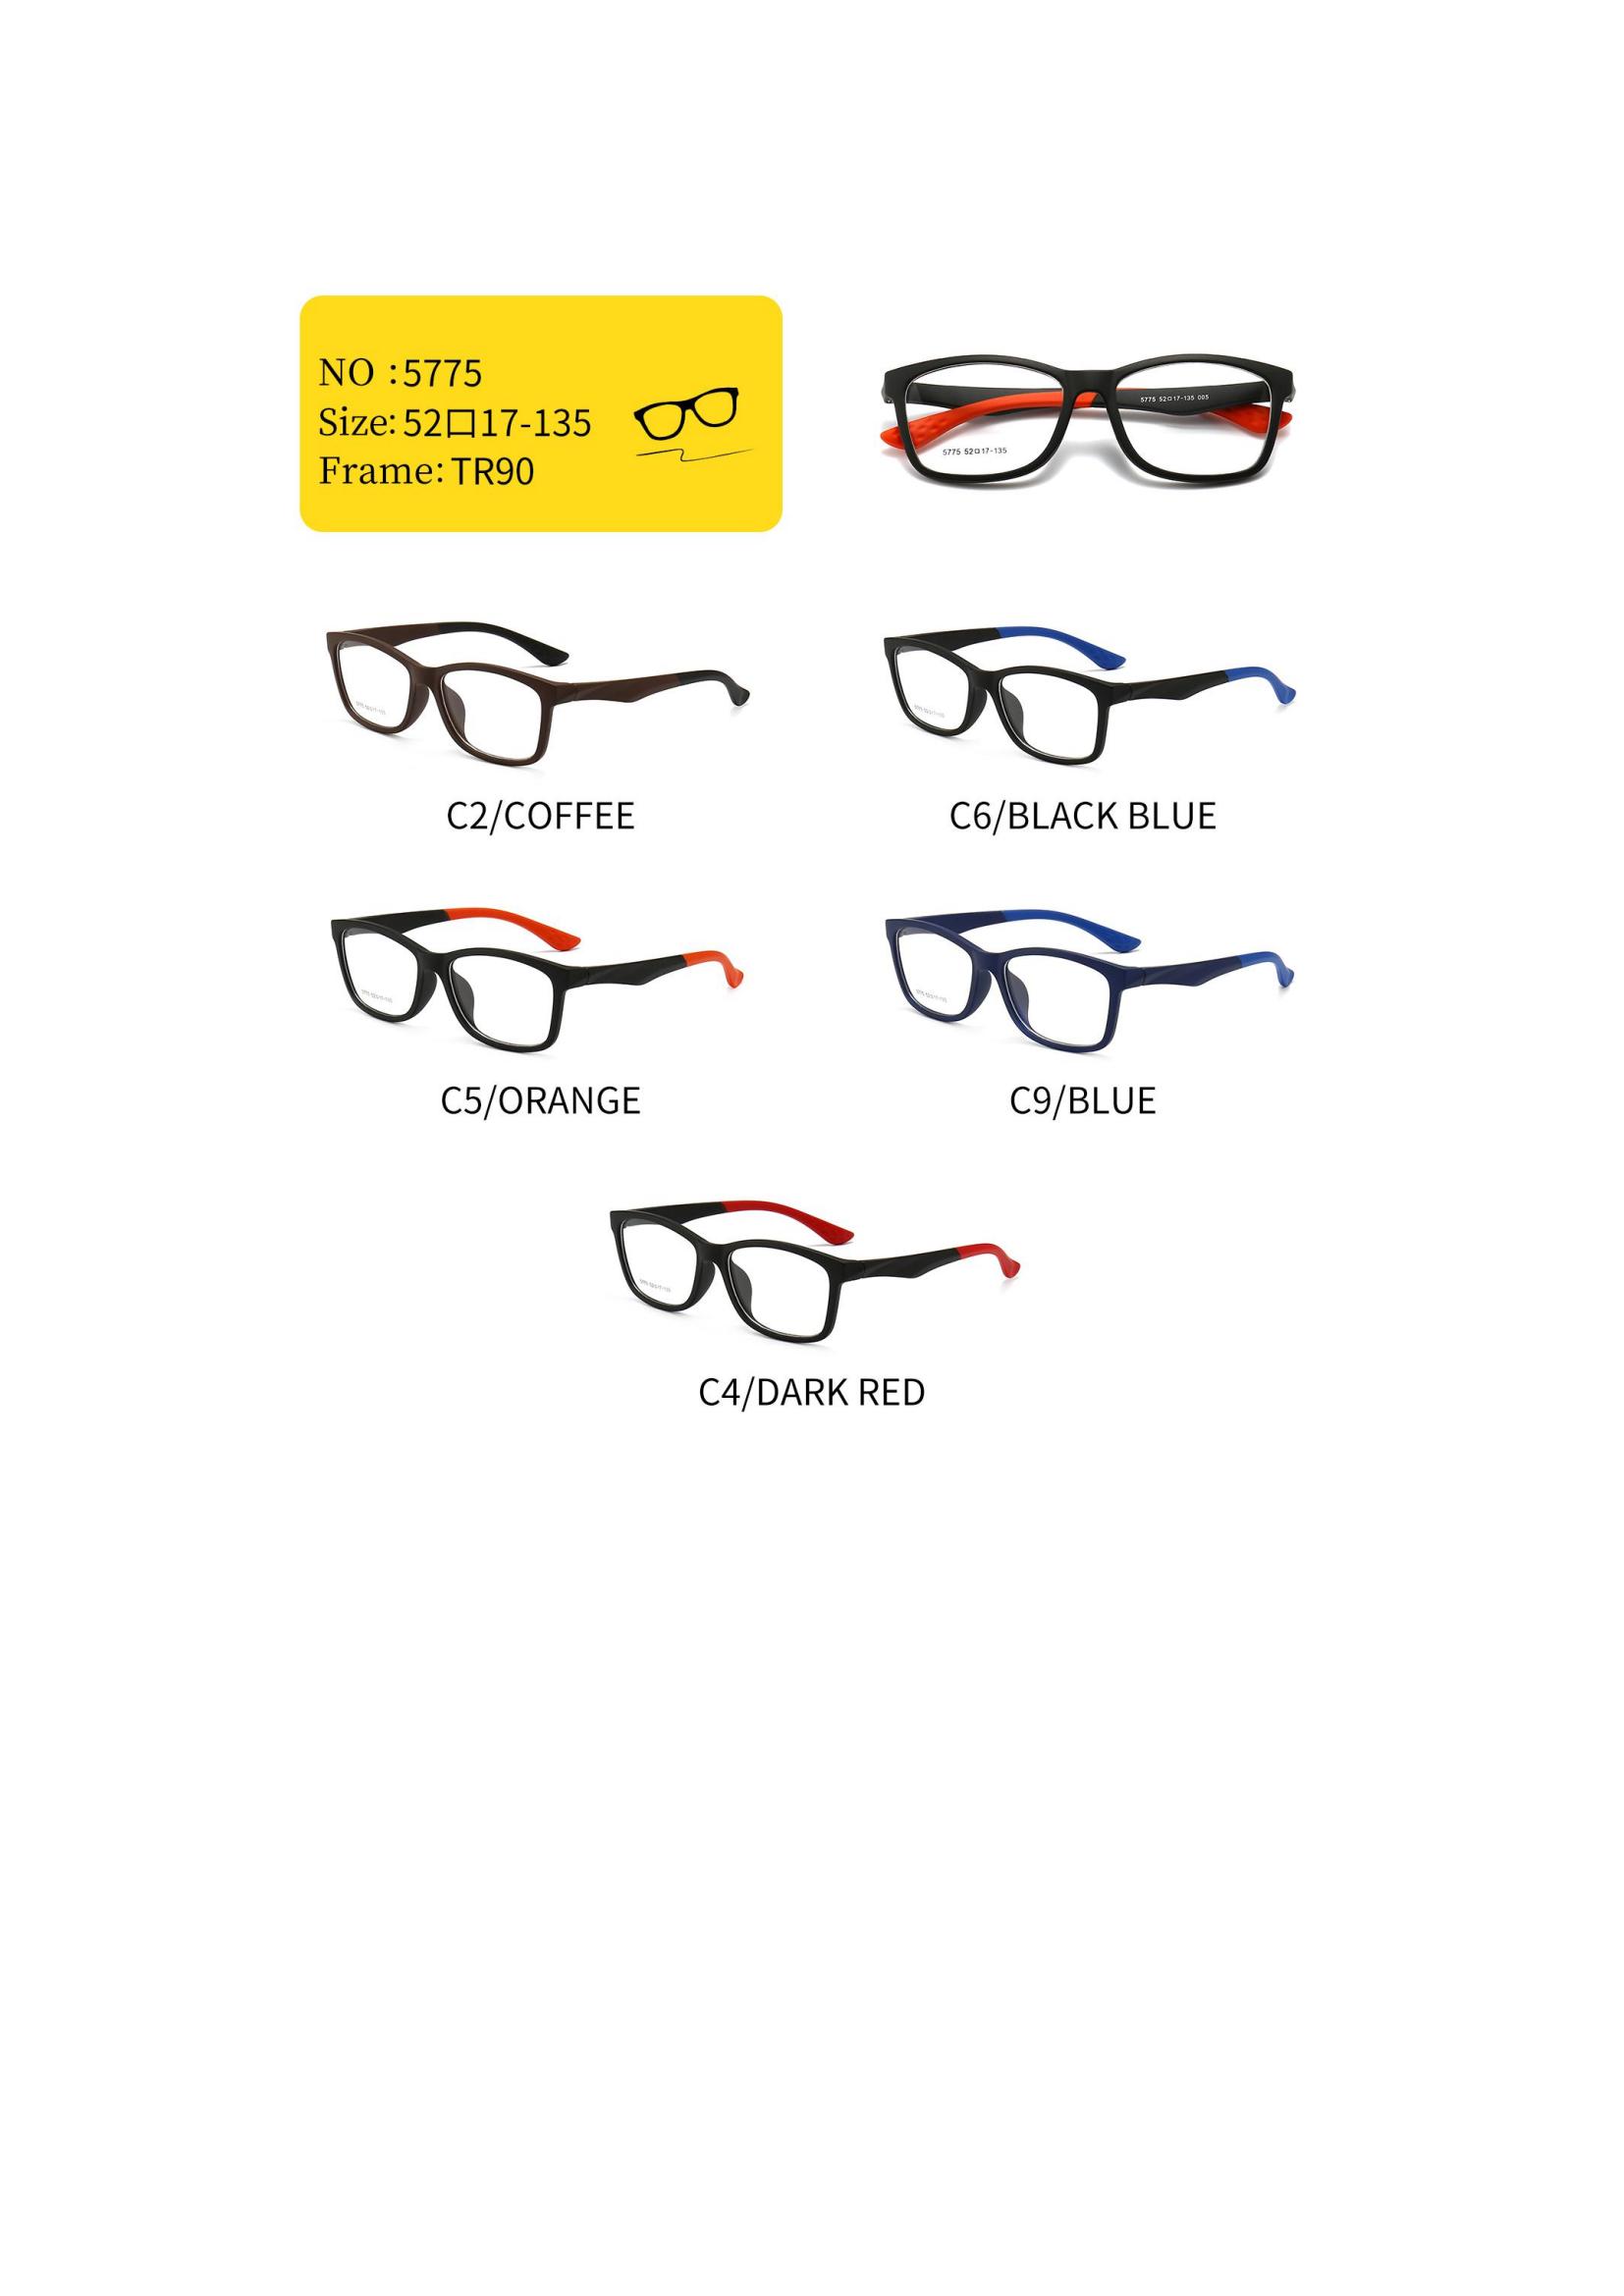 sports frames glasses